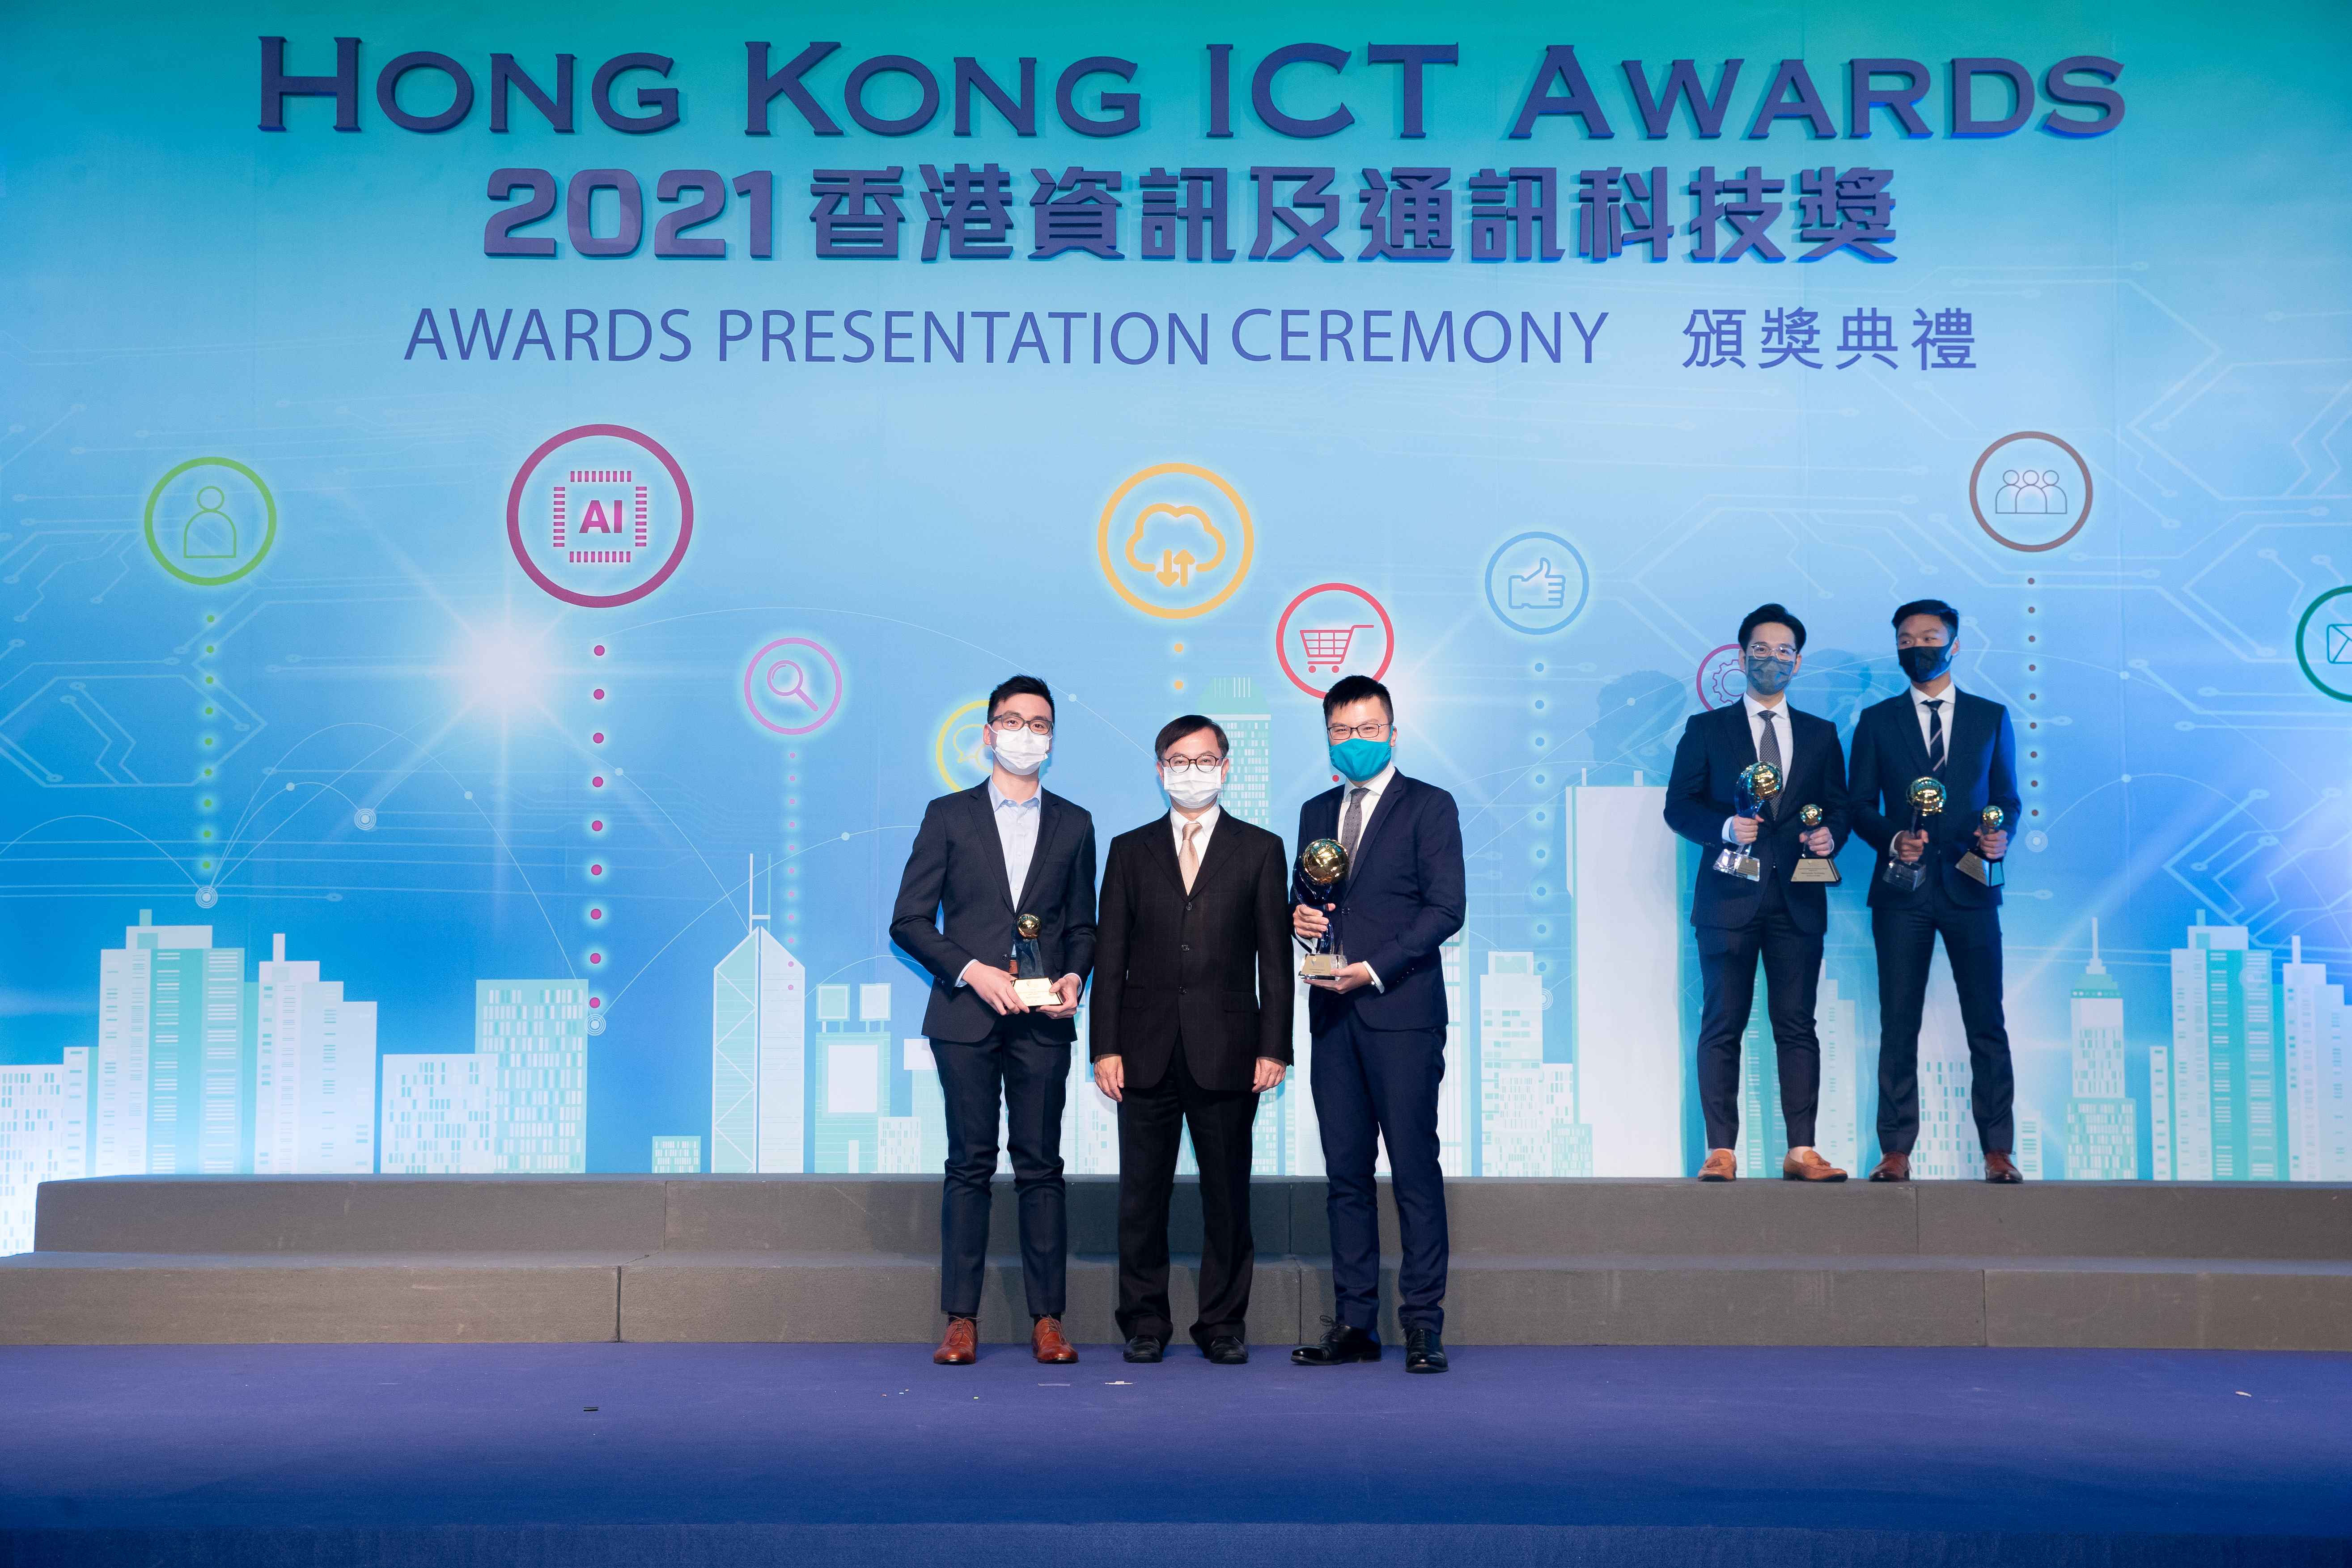 Hong Kong ICT Awards 2021 FinTech Grand Award Winner